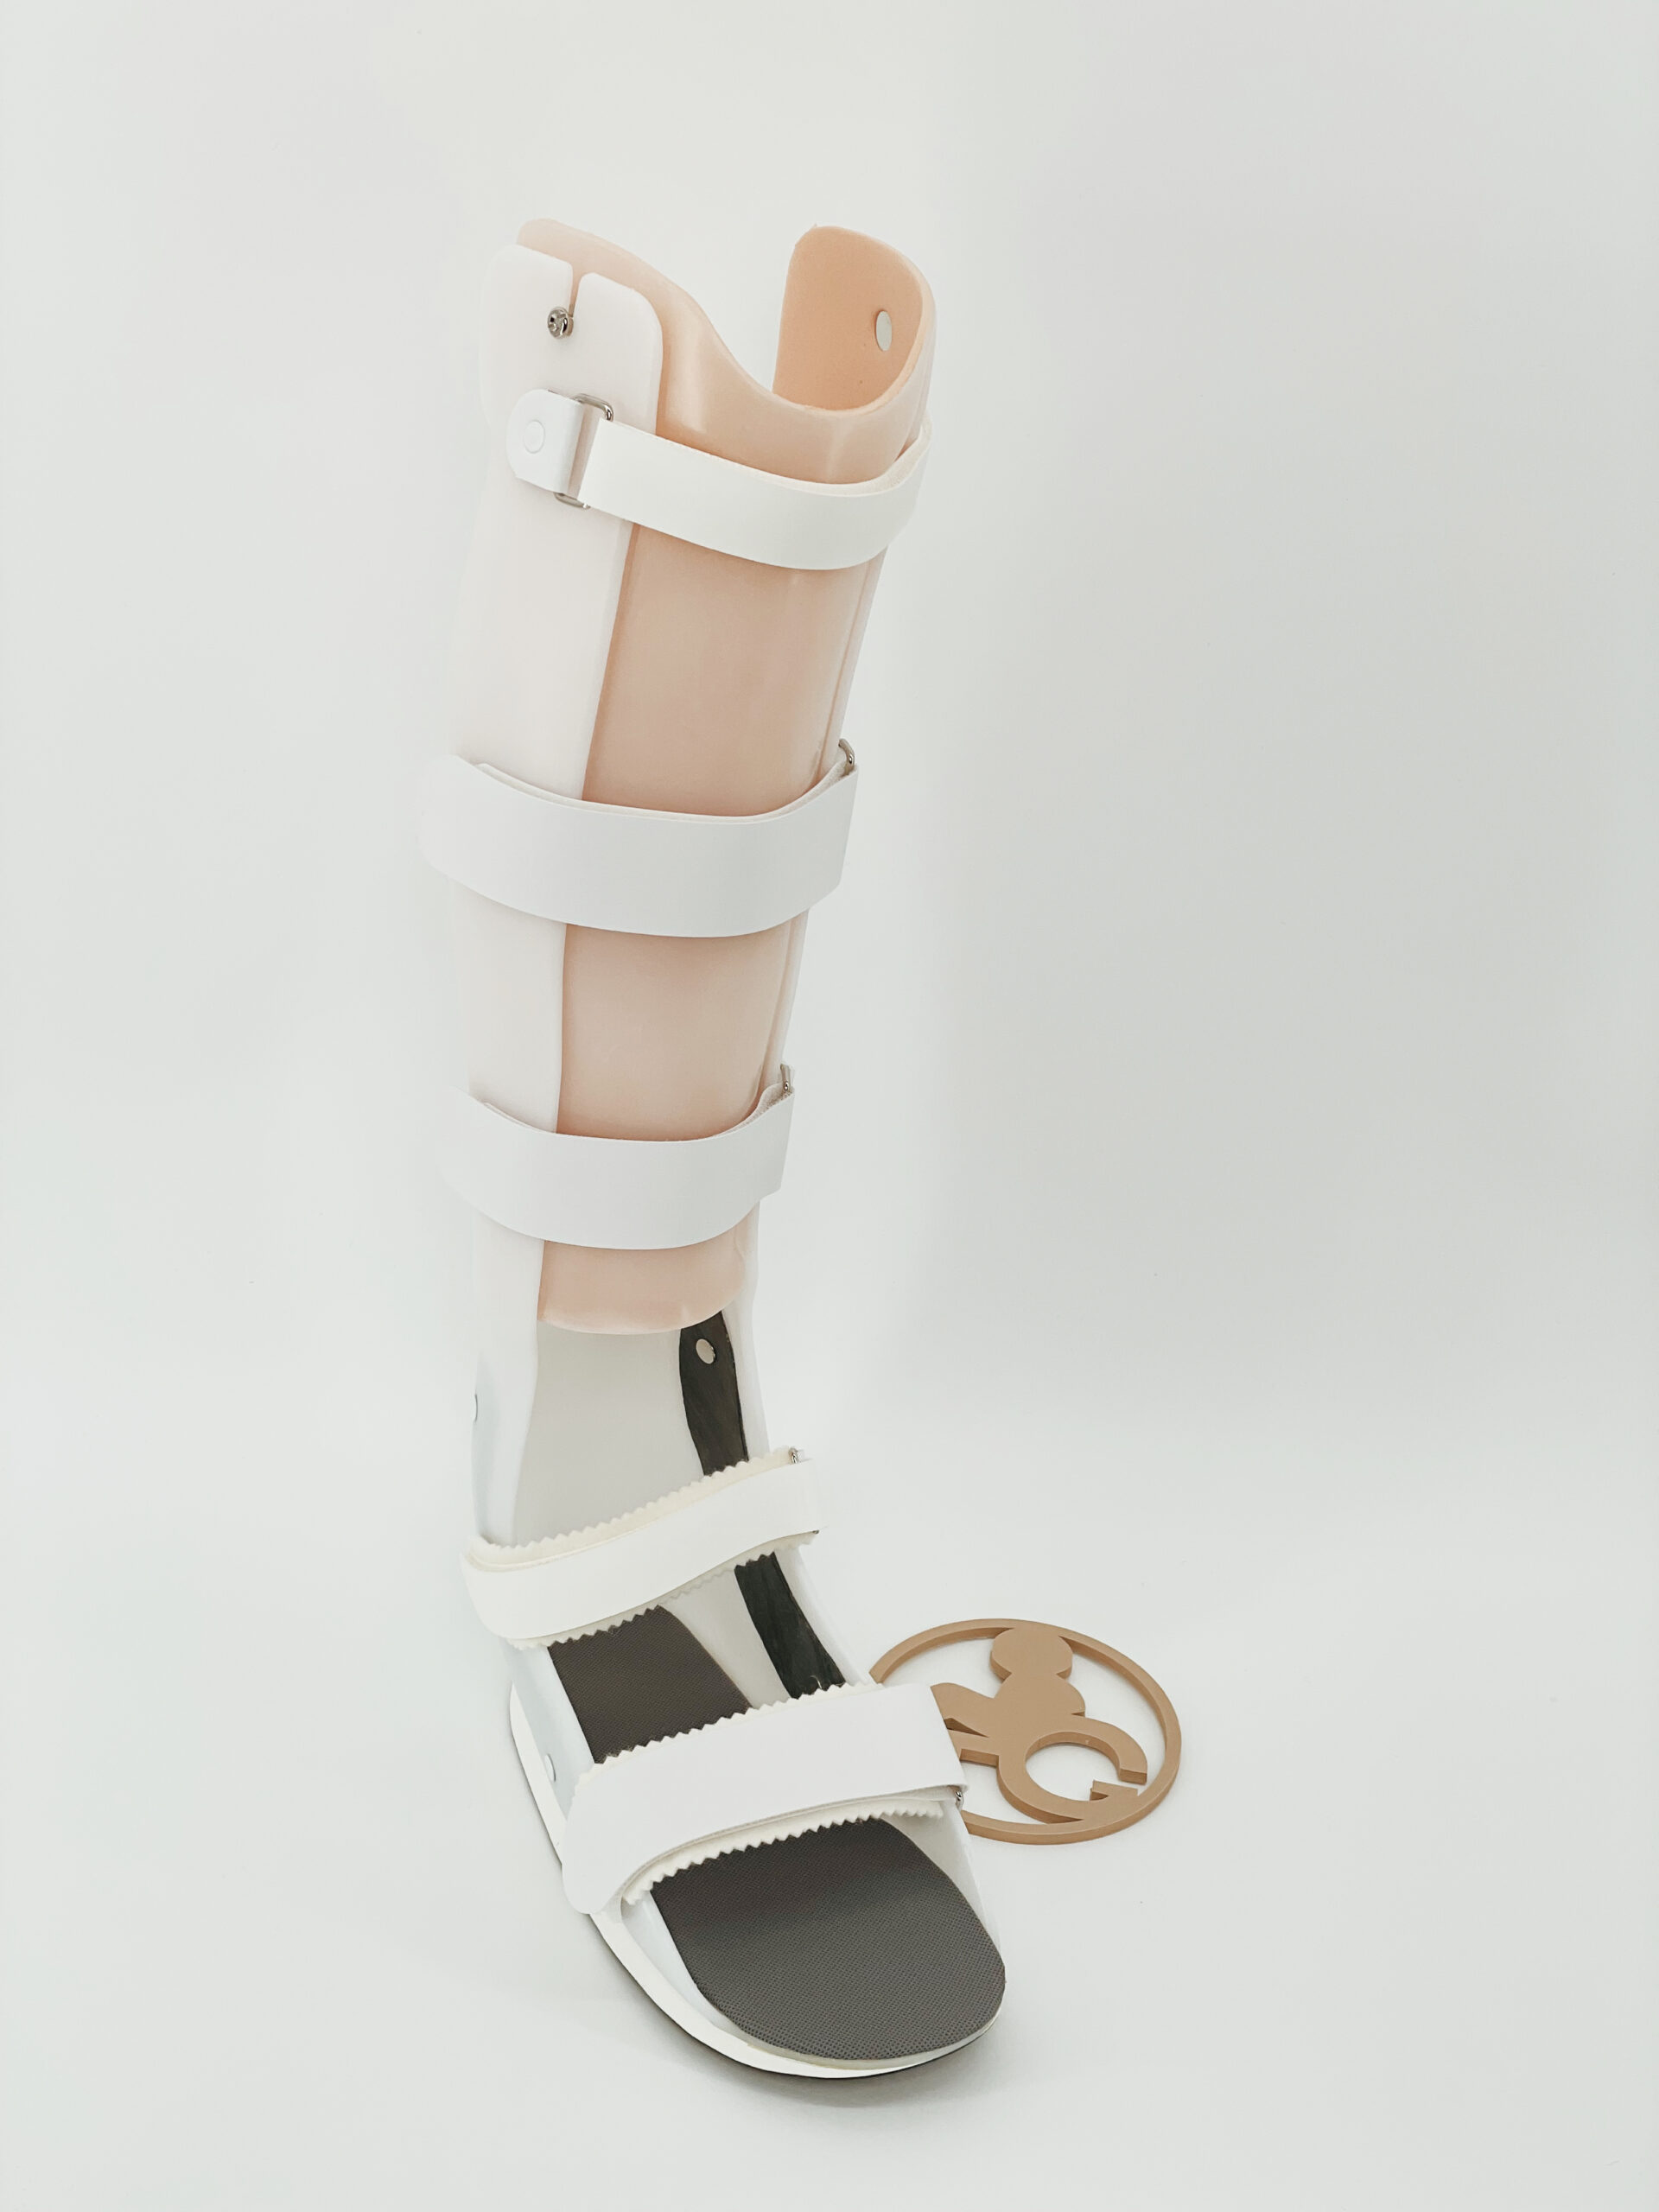 踵骨骨折 | 札幌市や帯広市で義肢・装具の製作は創業明治36年の田村 